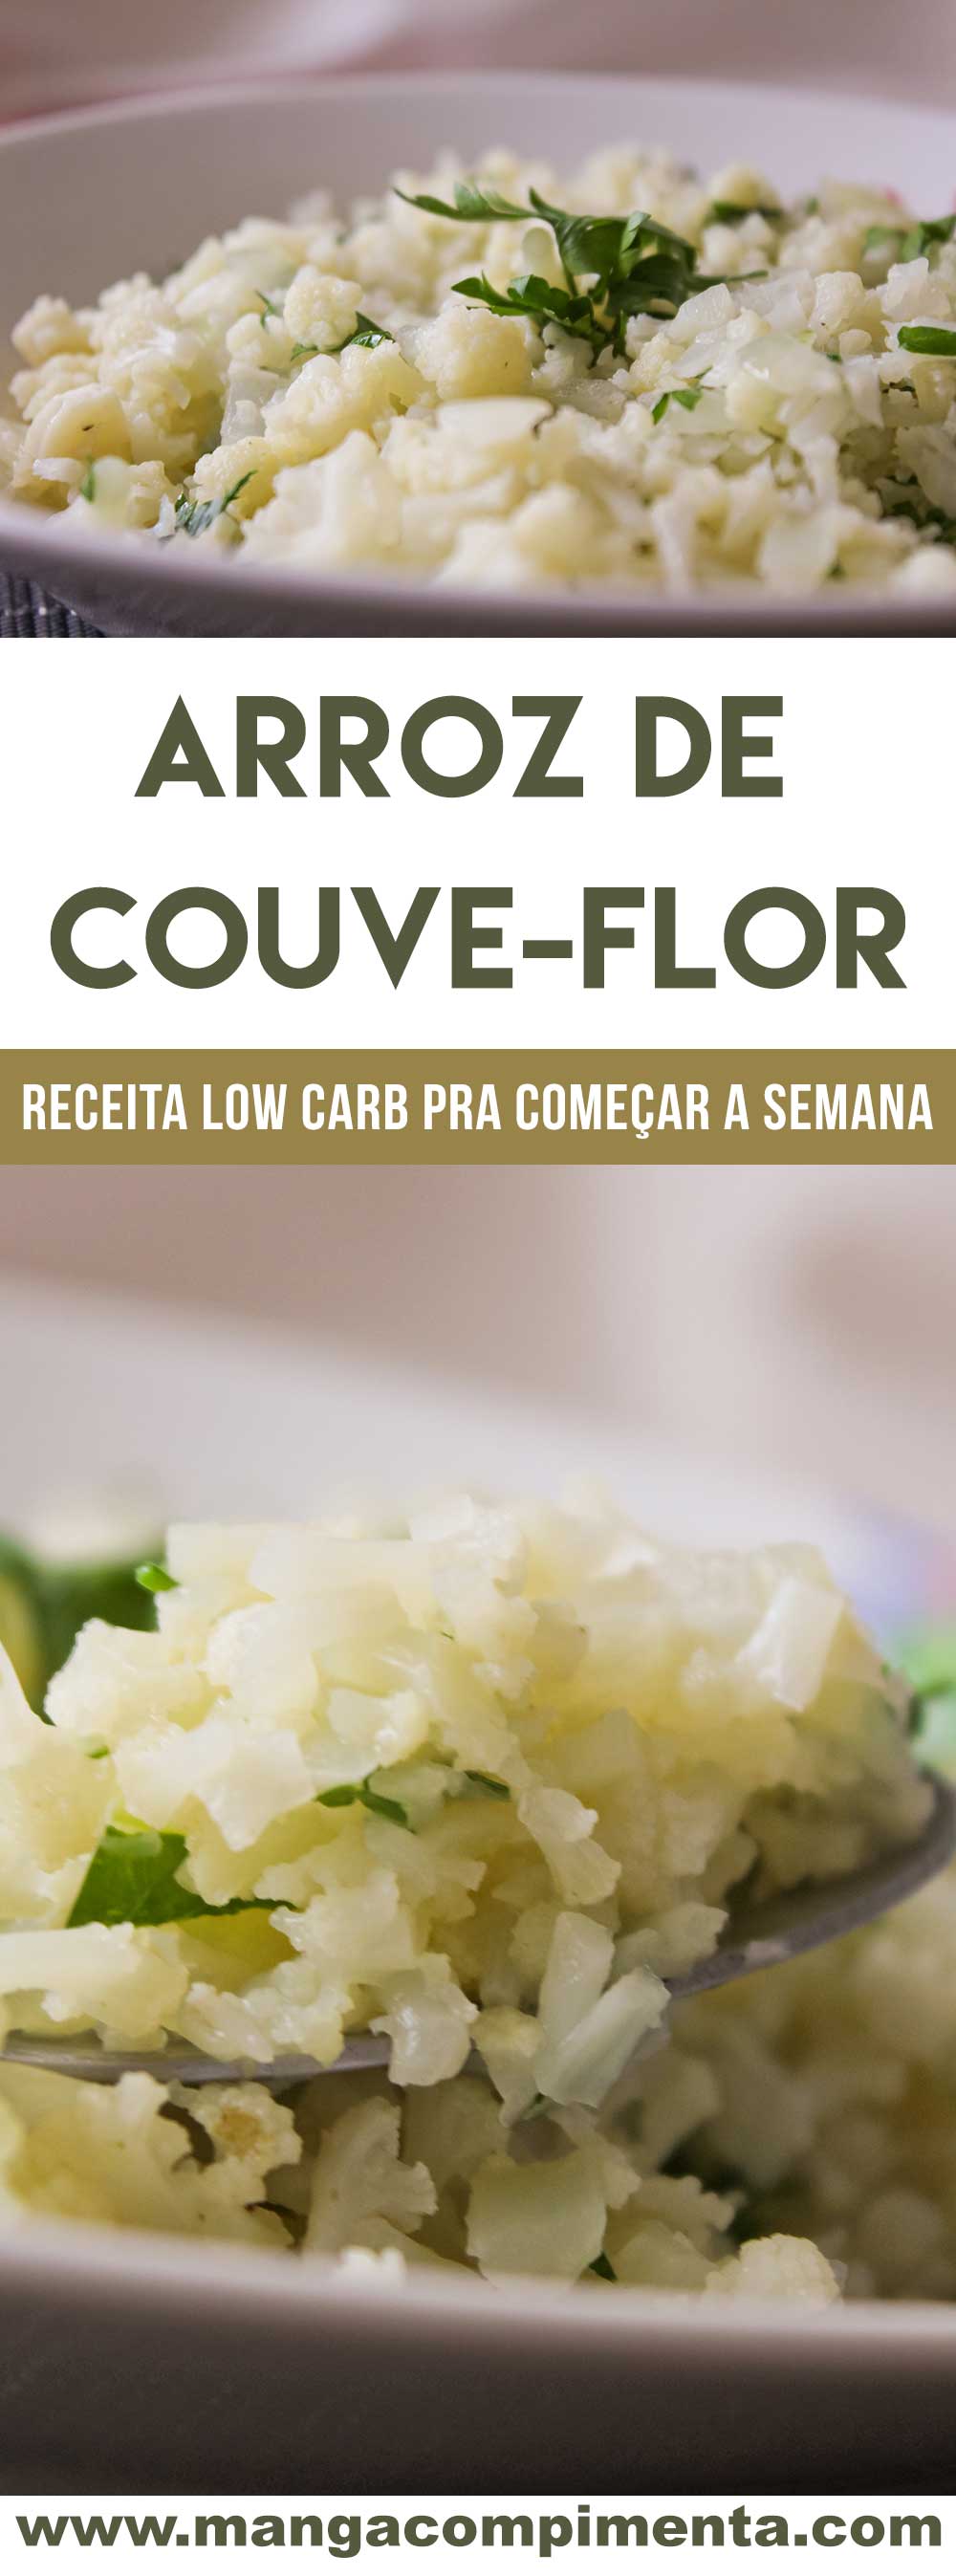 Receita de Arroz de Couve-flor - um prato Low Carb para quem pretende começar uma dieta nessa segunda-feira!